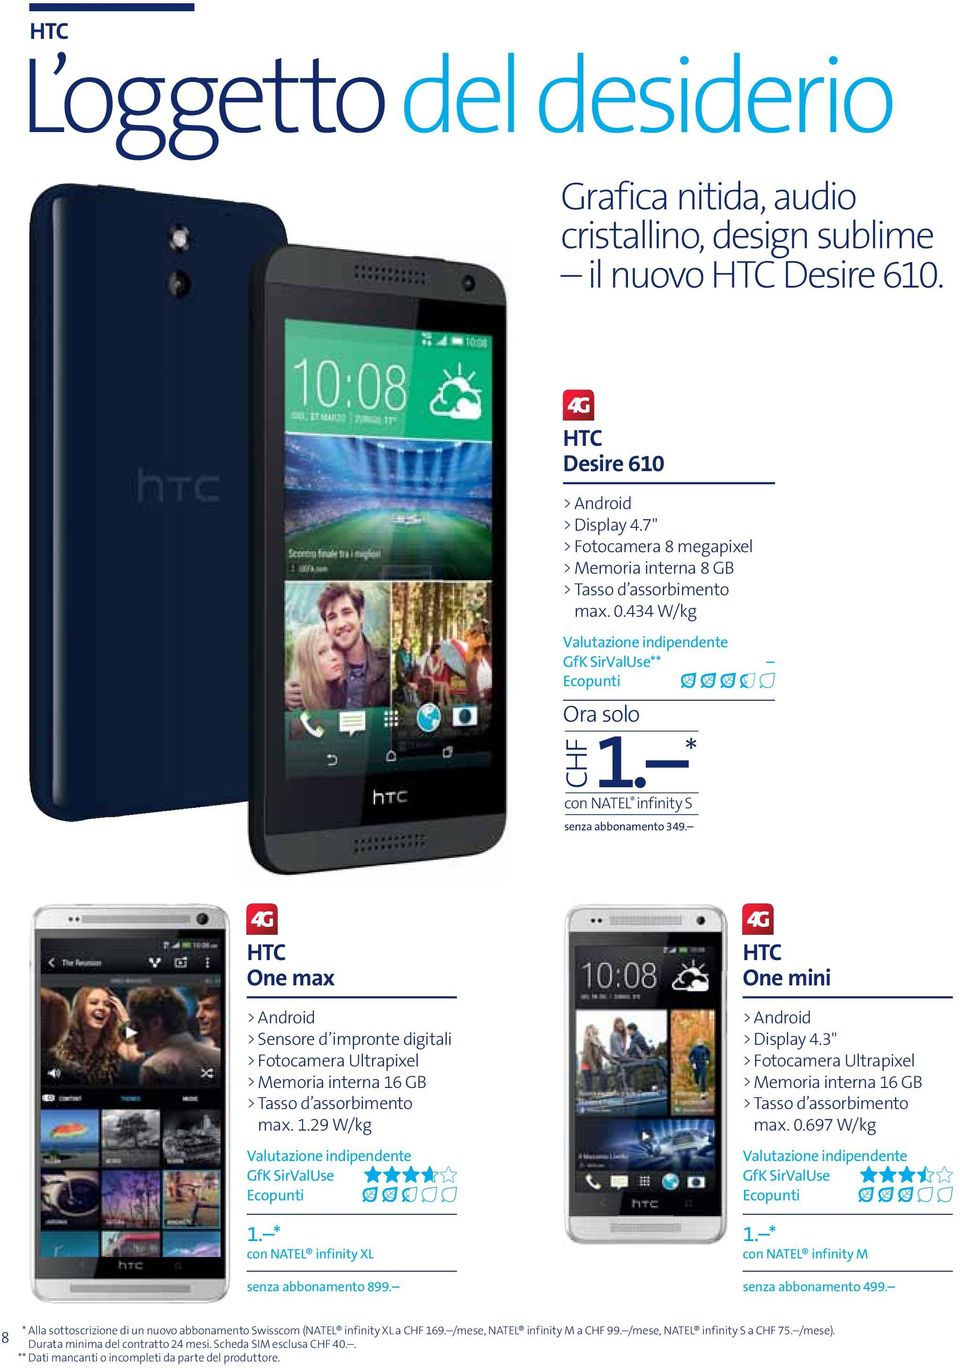 HTC One max > Sensore d impronte digitali > Fotocamera Ultrapixel > Memoria interna 16 GB > Tasso d assorbimento max. 1.29 W/kg GfK SirValUse Ecopunti 1. * con NATEL infinity XL senza abbonamento 899.